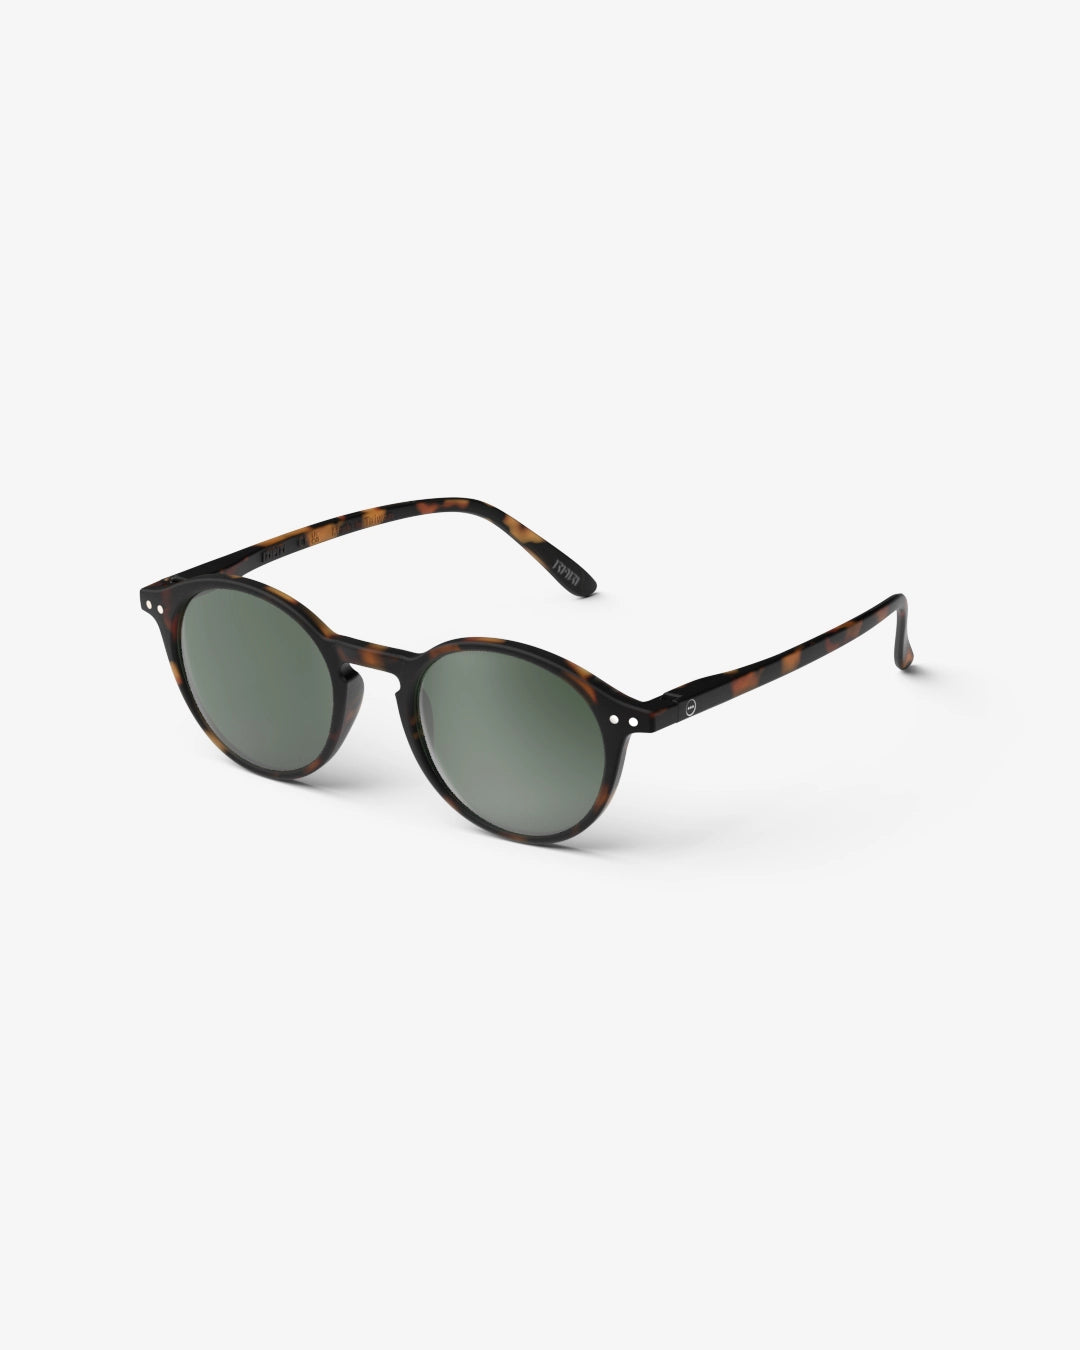 #D Sun Glasses - Tortoise green Lenses